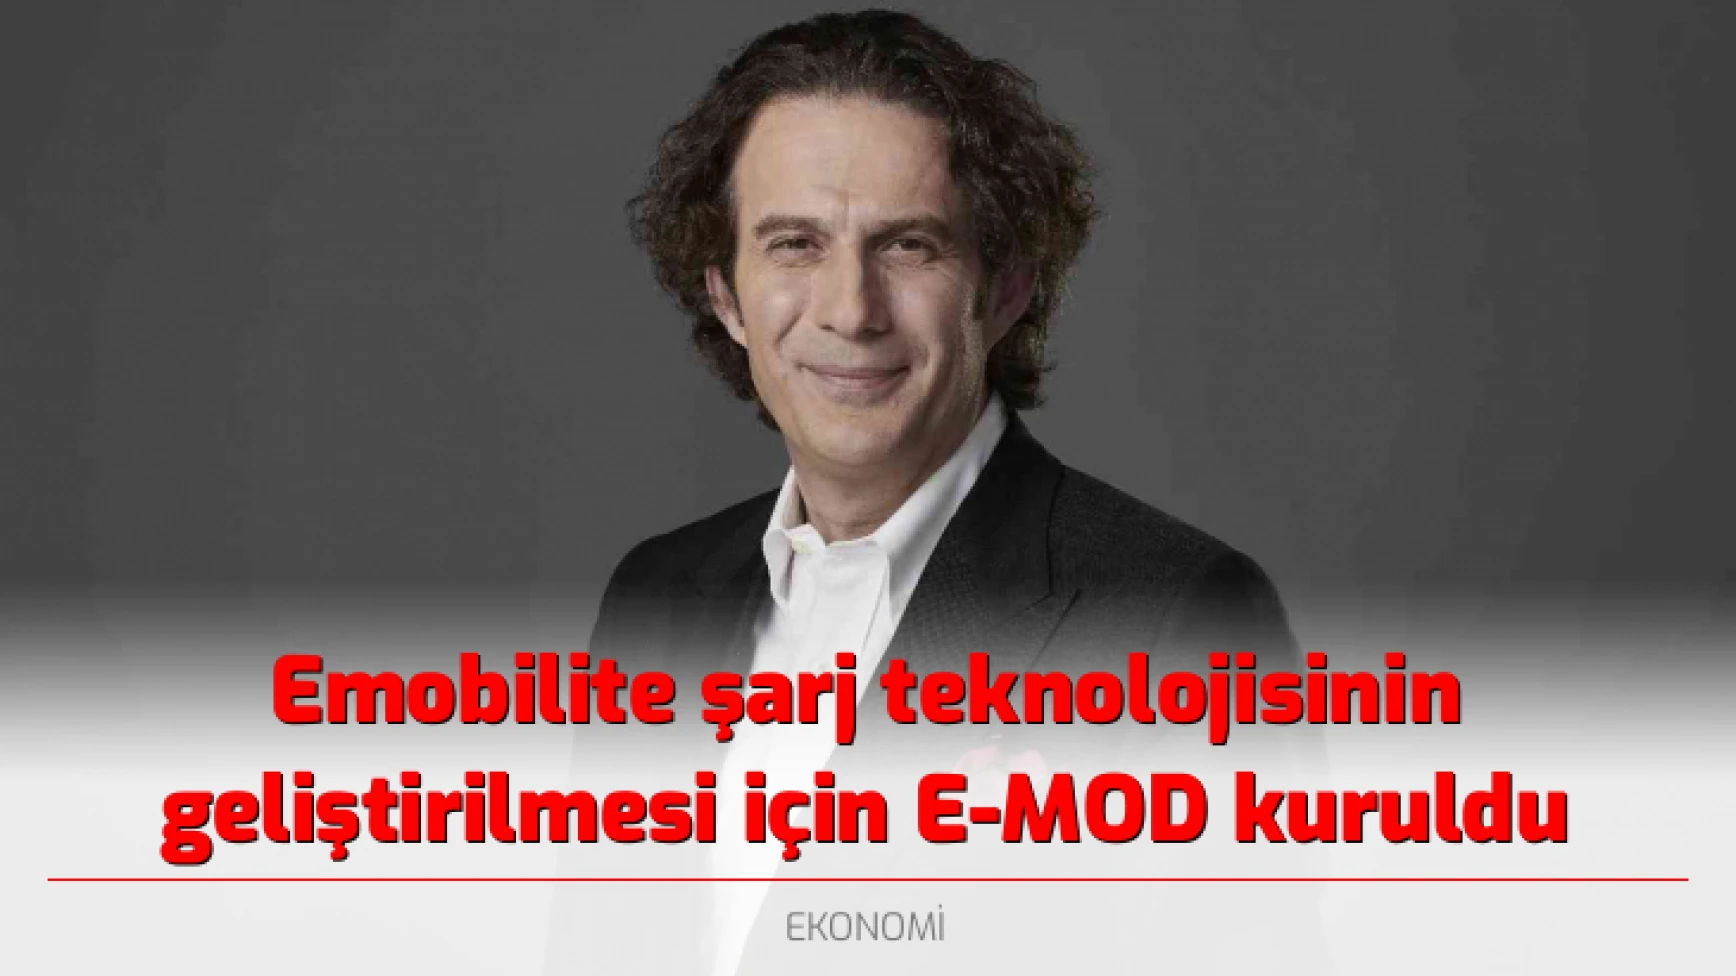 Emobilite şarj teknolojisinin geliştirilmesi için E-MOD kuruldu